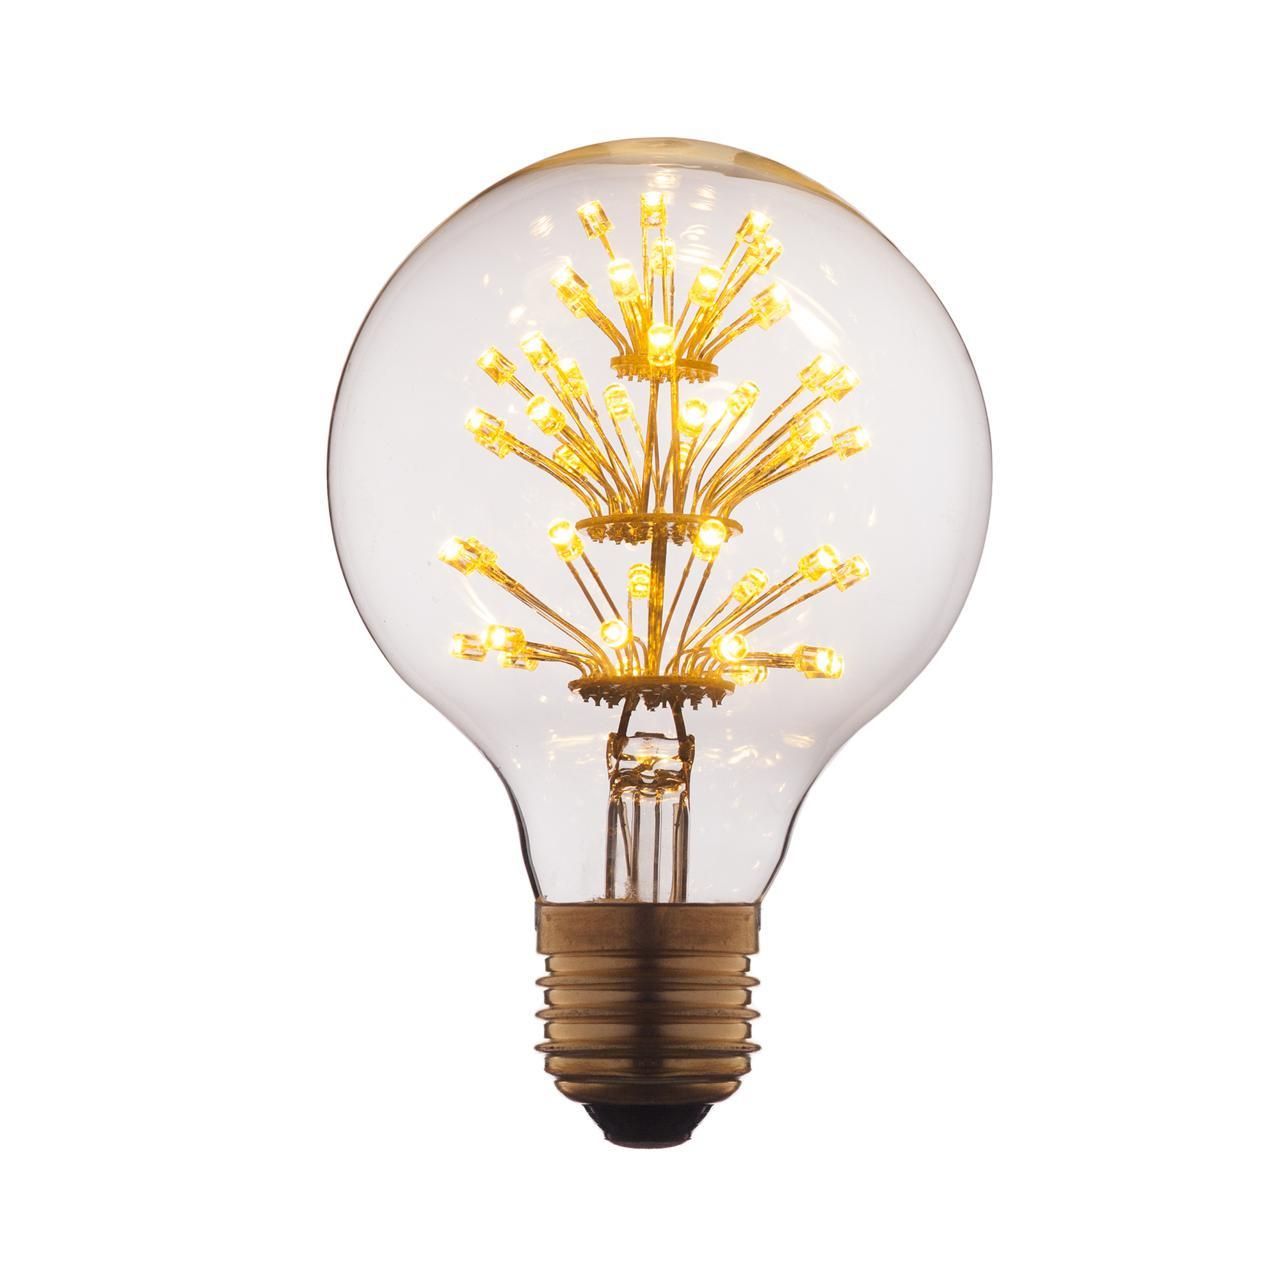 Ретро лампа Эдисона (Шар) E27 3W 220V Edison Bulb